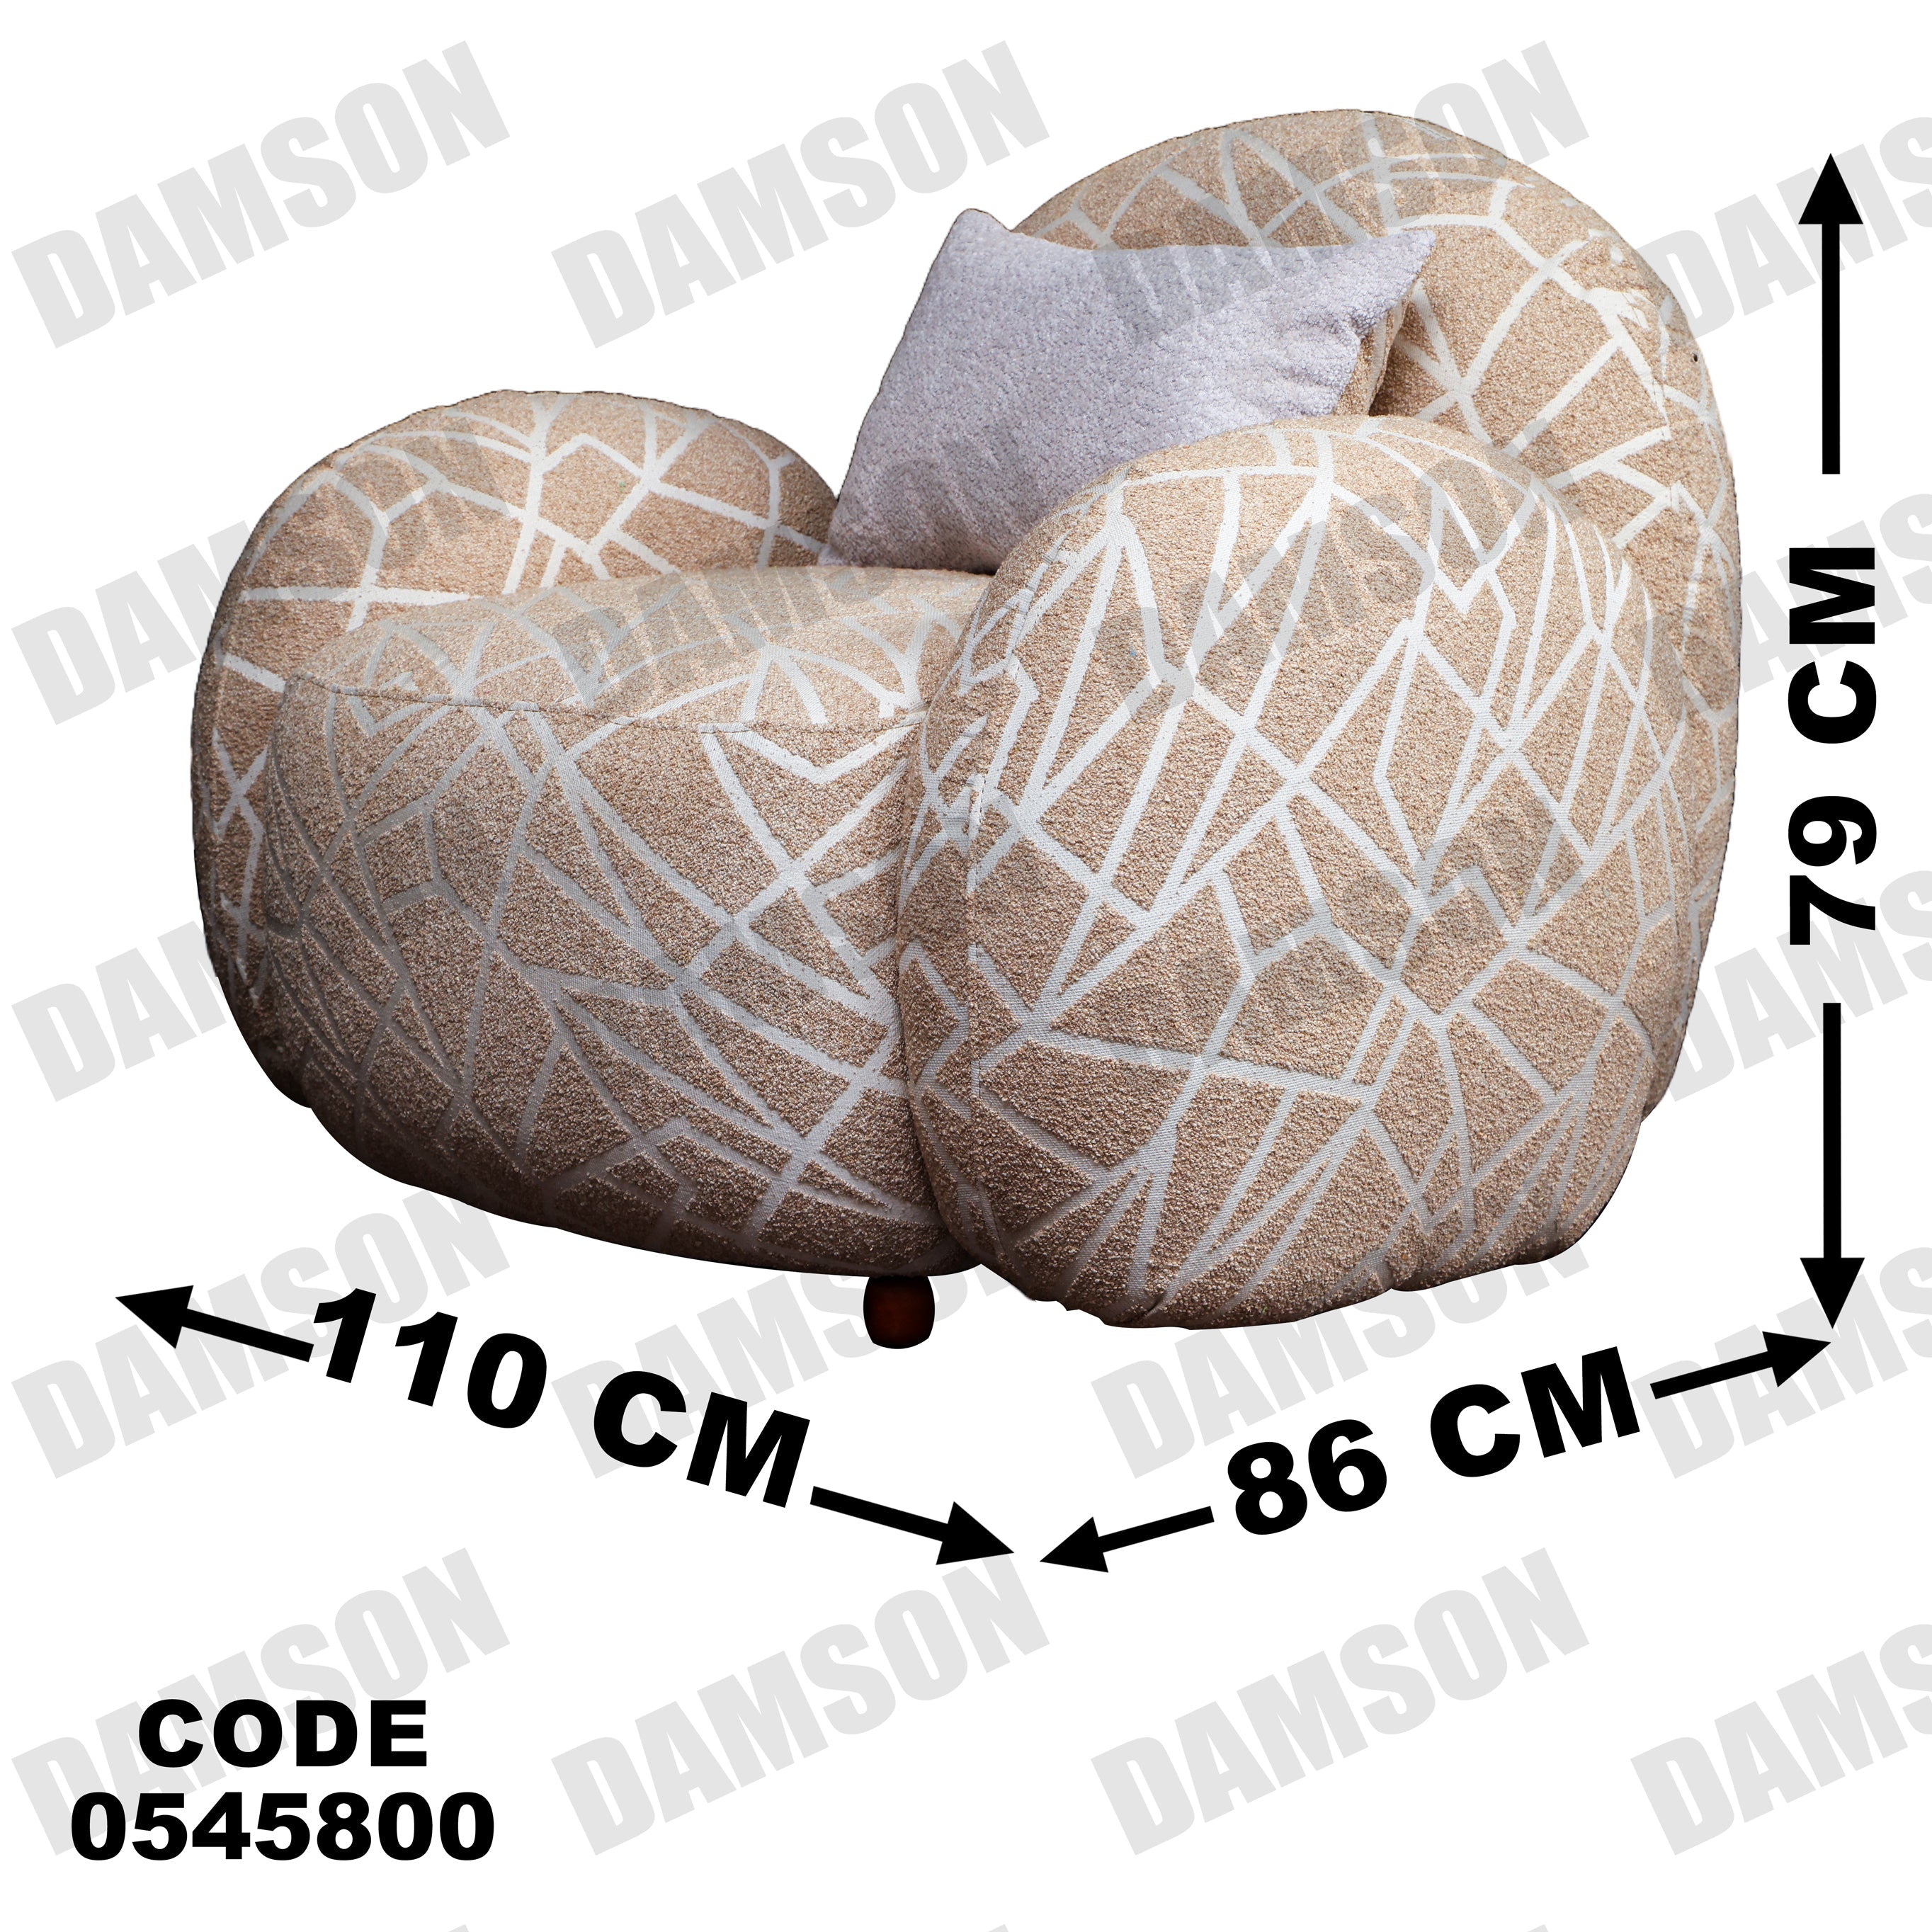 فوتية 1-458 - Damson Furnitureفوتية 1-458